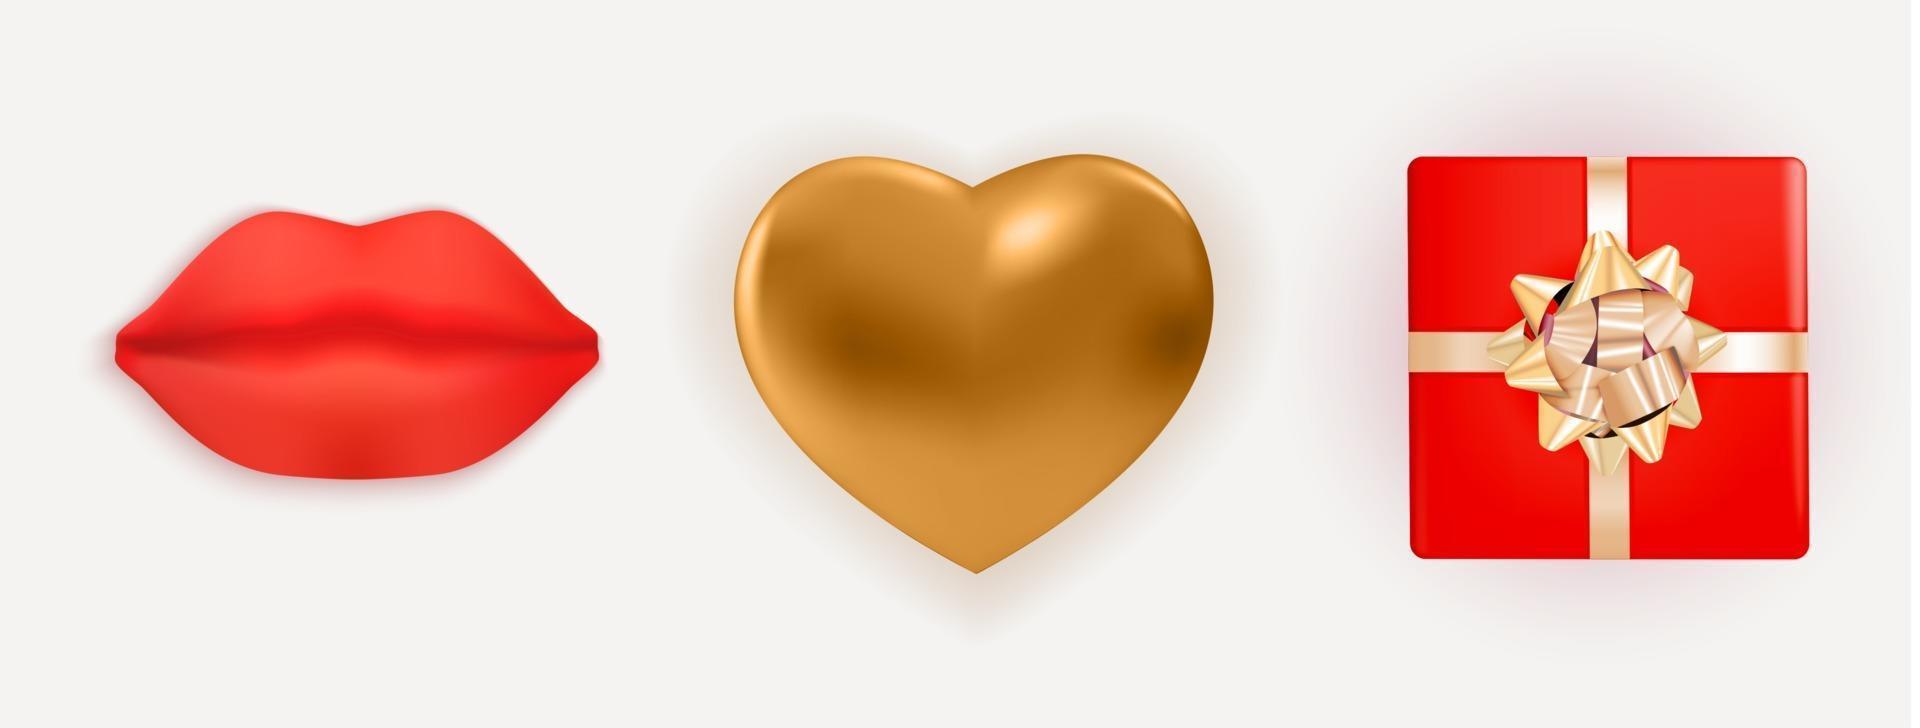 coração de metal brilhante dourado realista, lábios vermelhos e caixa de presente com arco e fita. elementos de design para cartaz de dia dos namorados, banner. Eps10 de ilustração vetorial 3d vetor